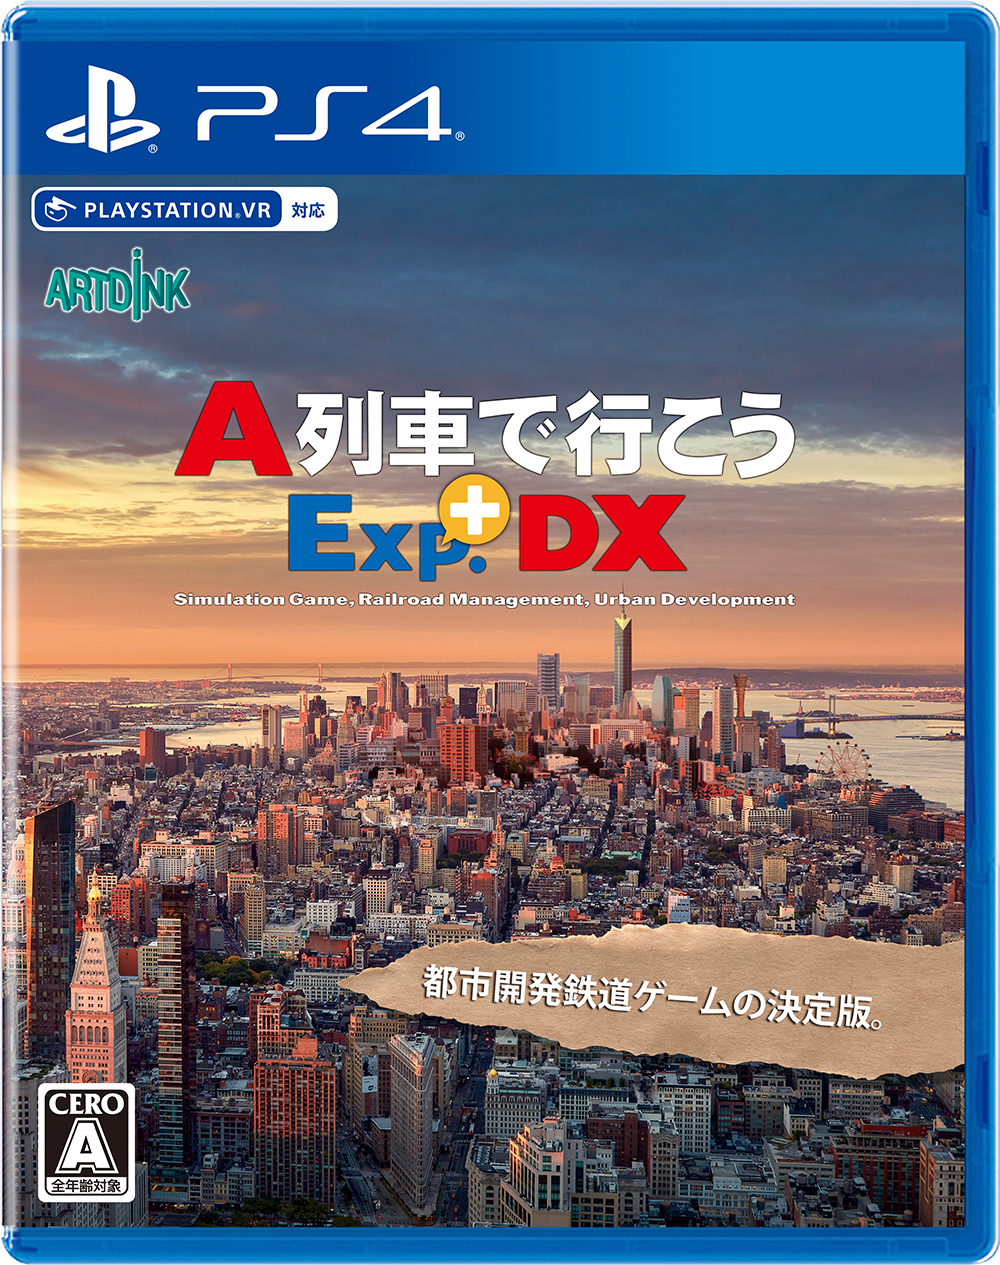 PS4「A列車で行こうExp.+ DX」4月27日発売。新たに33車両が追加収録